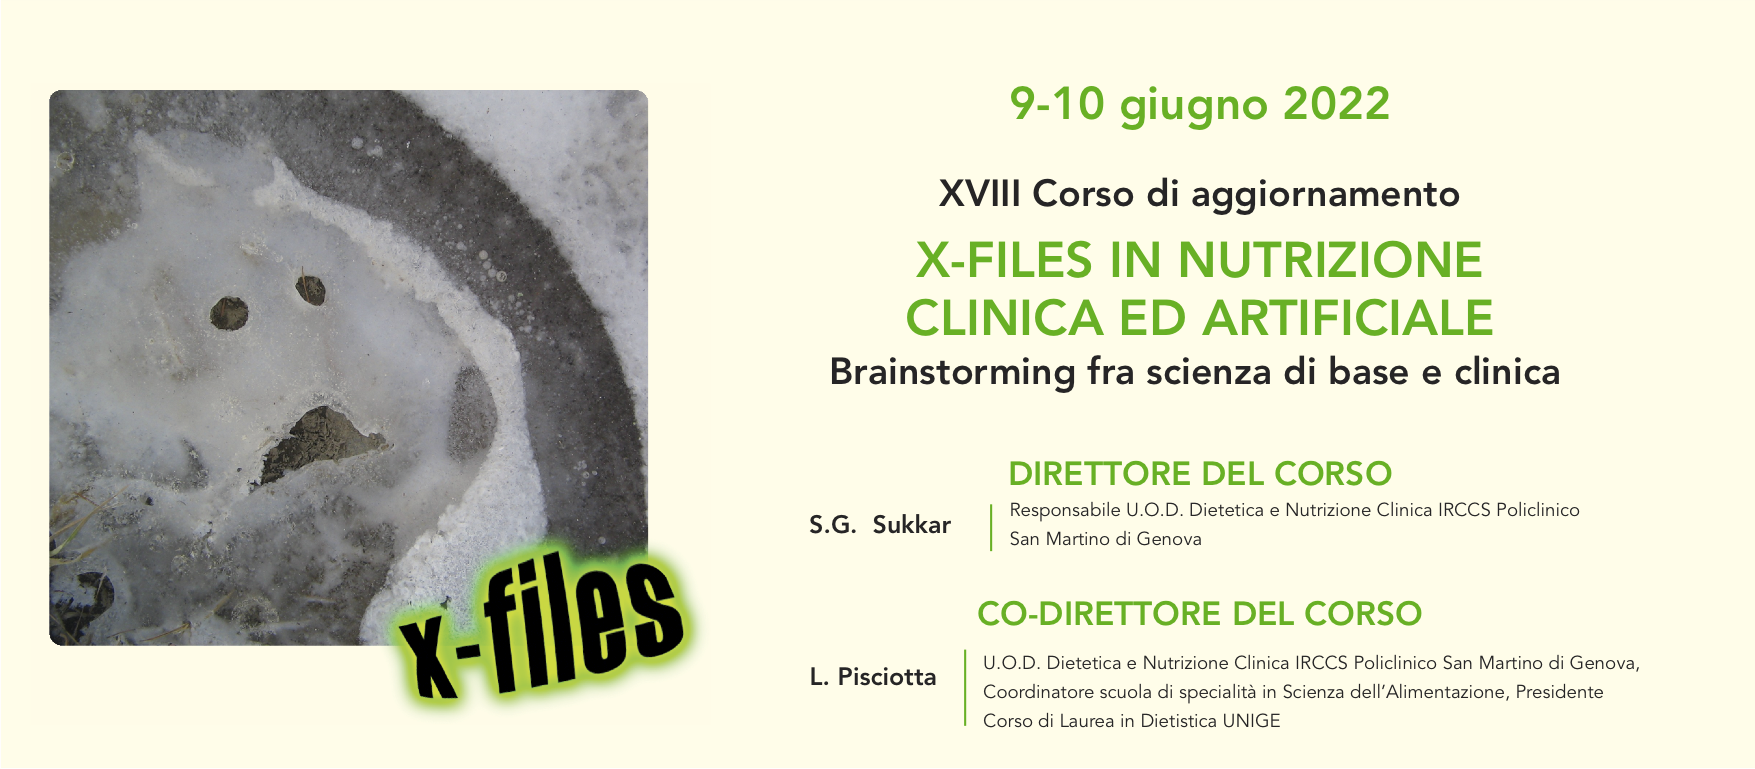  X-FILES IN NUTRIZIONE CLINICA ED ARTIFICIALE 2022